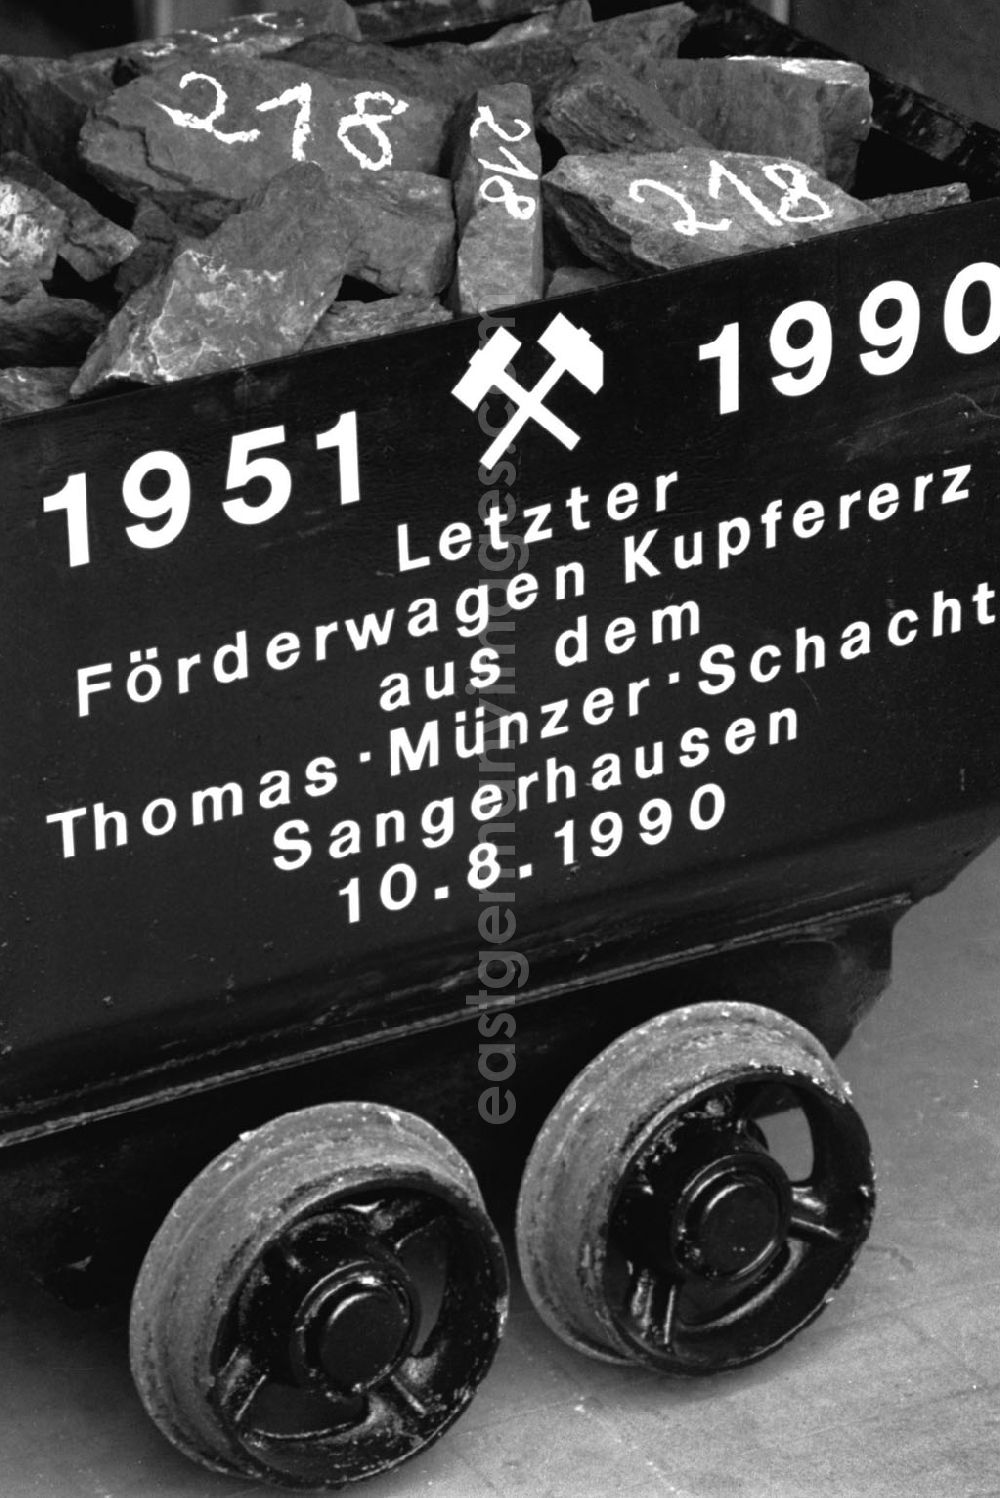 GDR photo archive: Sachsen Anhalt-Sangerhausen - Sangerhausen/Sachsen Anhalt Sangerhausen-Mannsfeld Kombinat Thomas-Müntzer-Schacht - Stillegung 17.08.9